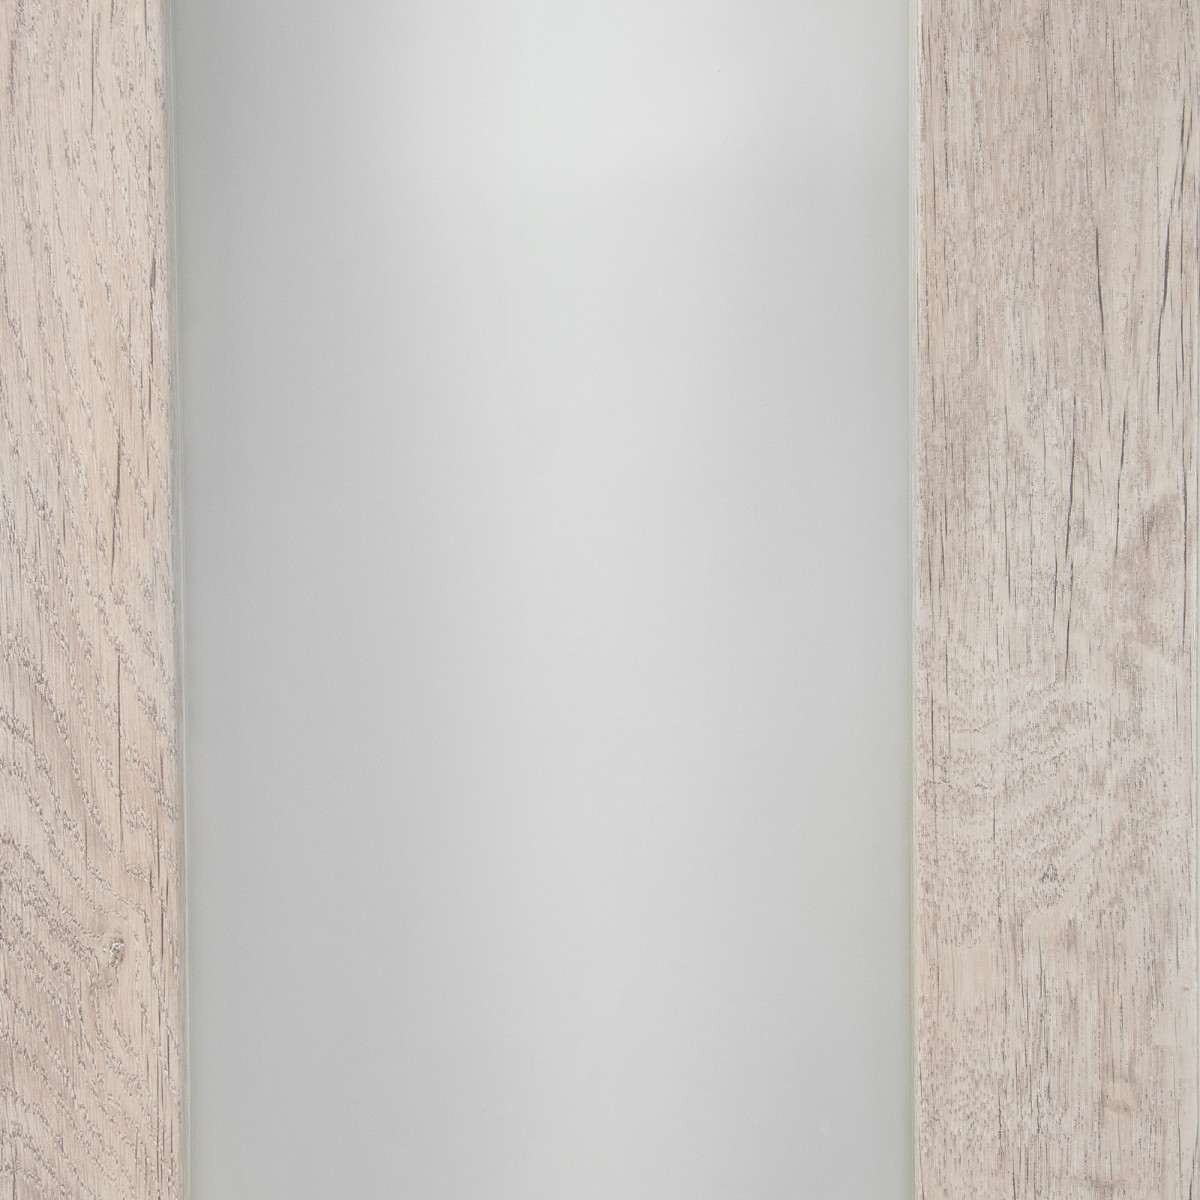 Дверь межкомнатная остеклённая Кантри 60x200 см, ПВХ, цвет дуб эссо, с фурнитурой